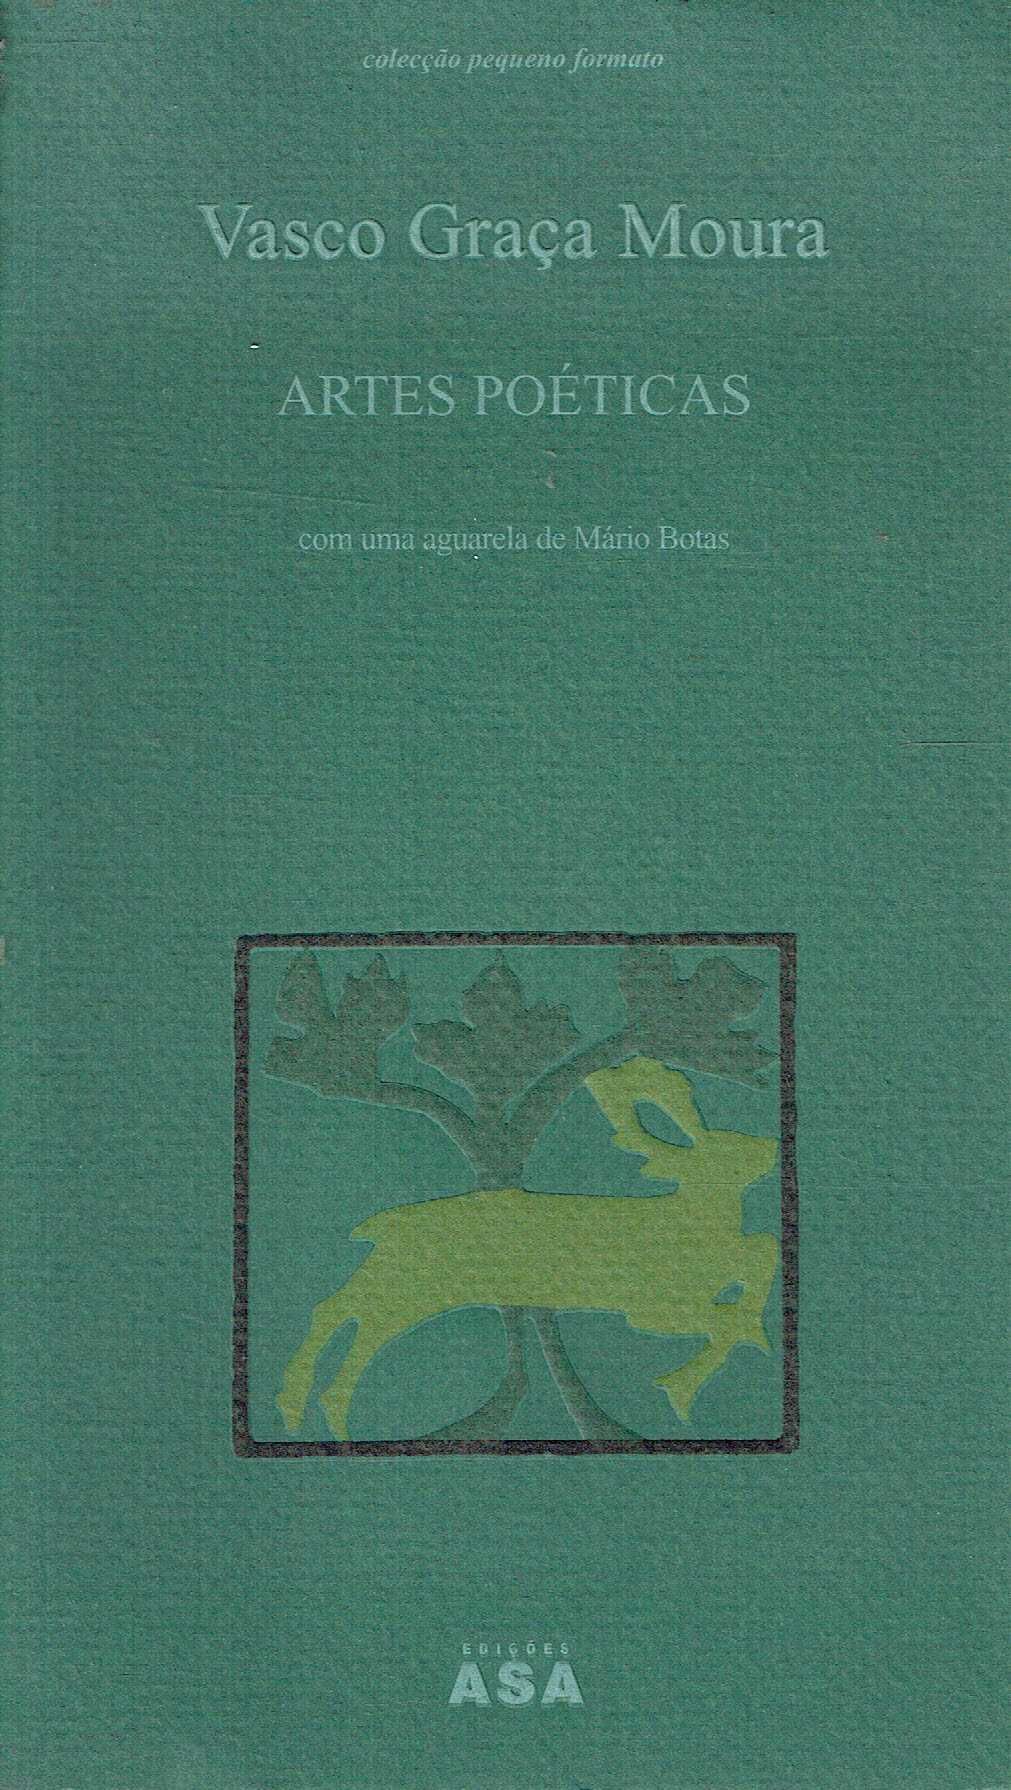 3907

Artes Poéticas
de Vasco Graça Moura